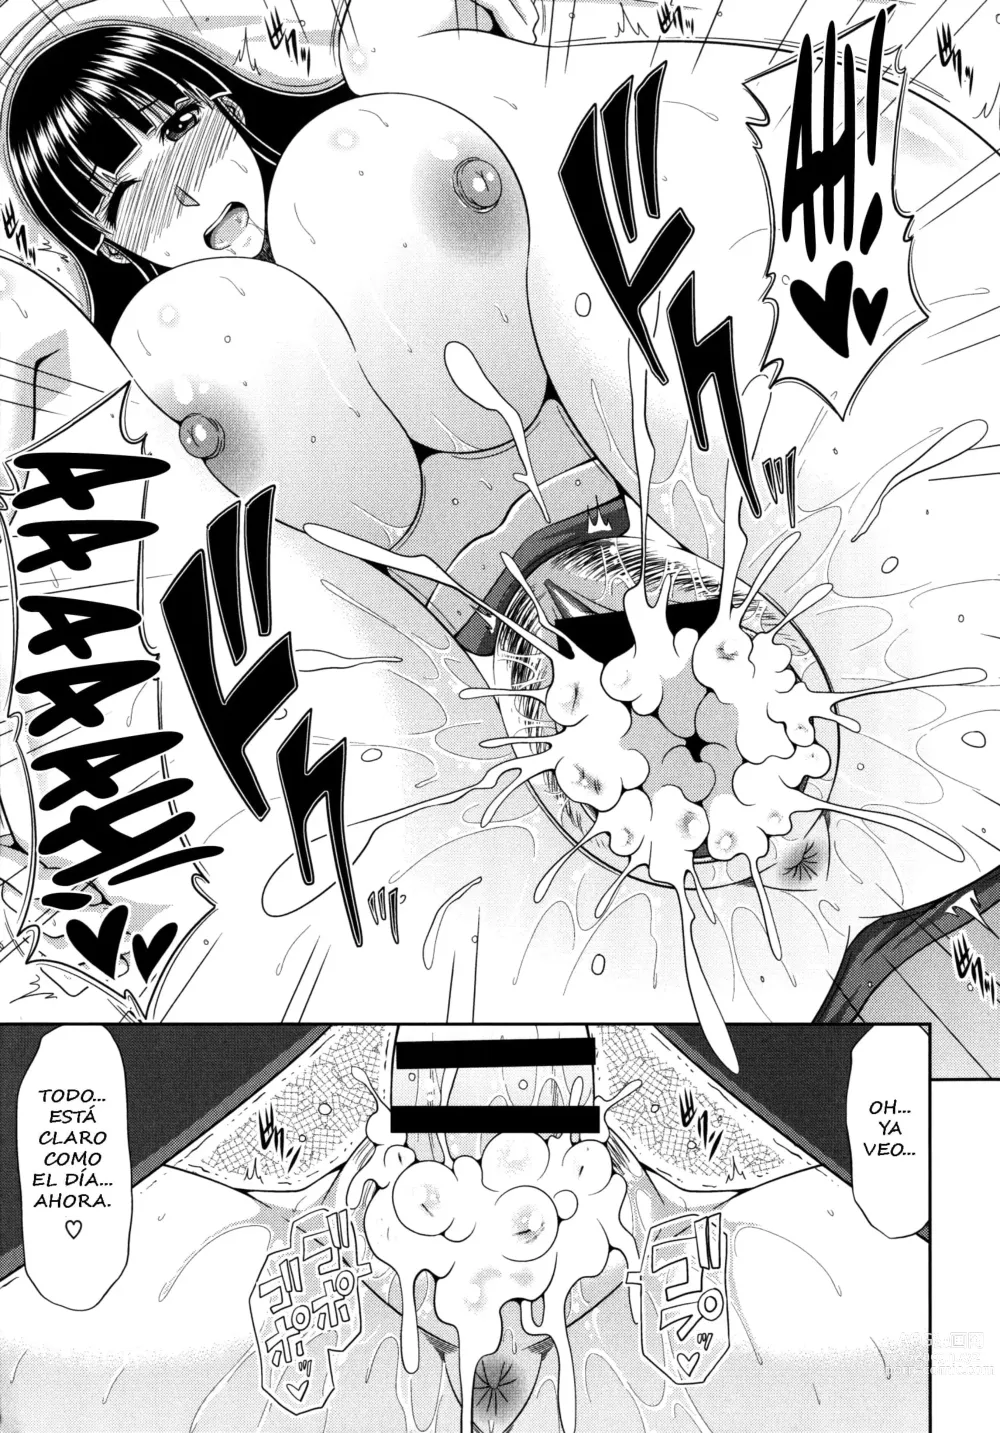 Page 79 of manga Chounyuusai Ch. 5-8, 10